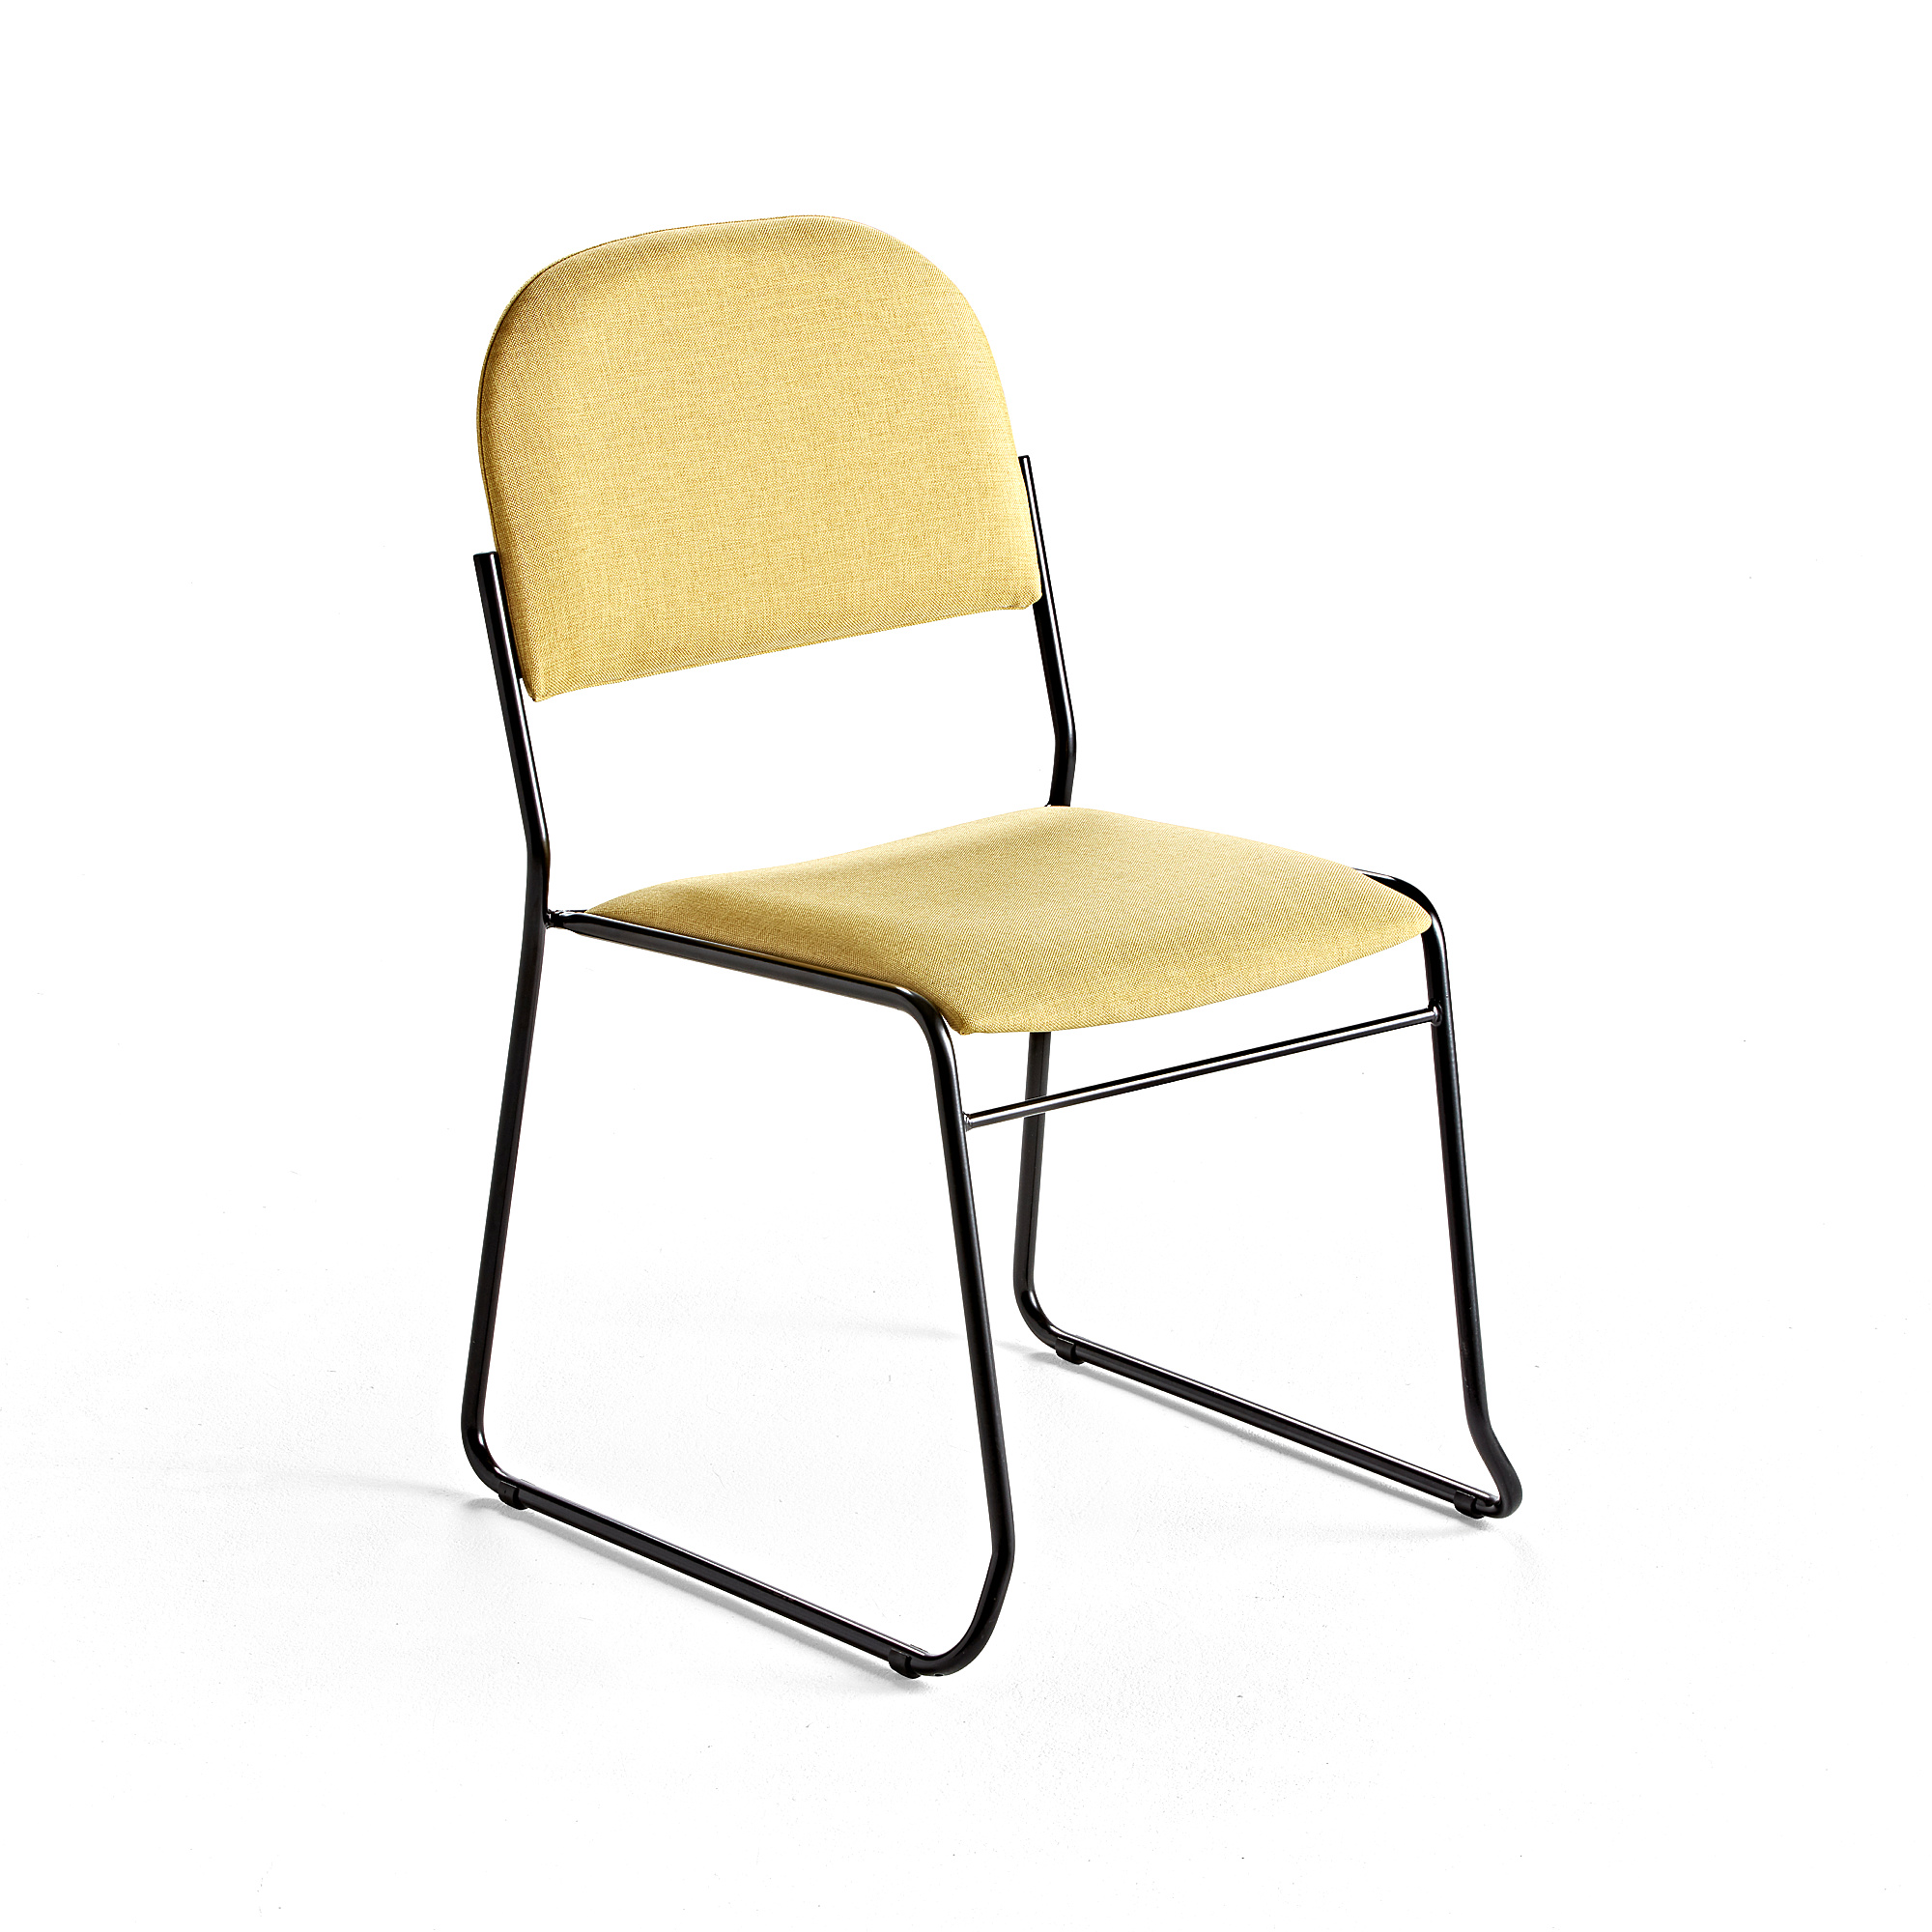 Konferenční židle DAWSON, textilní potah, žlutá